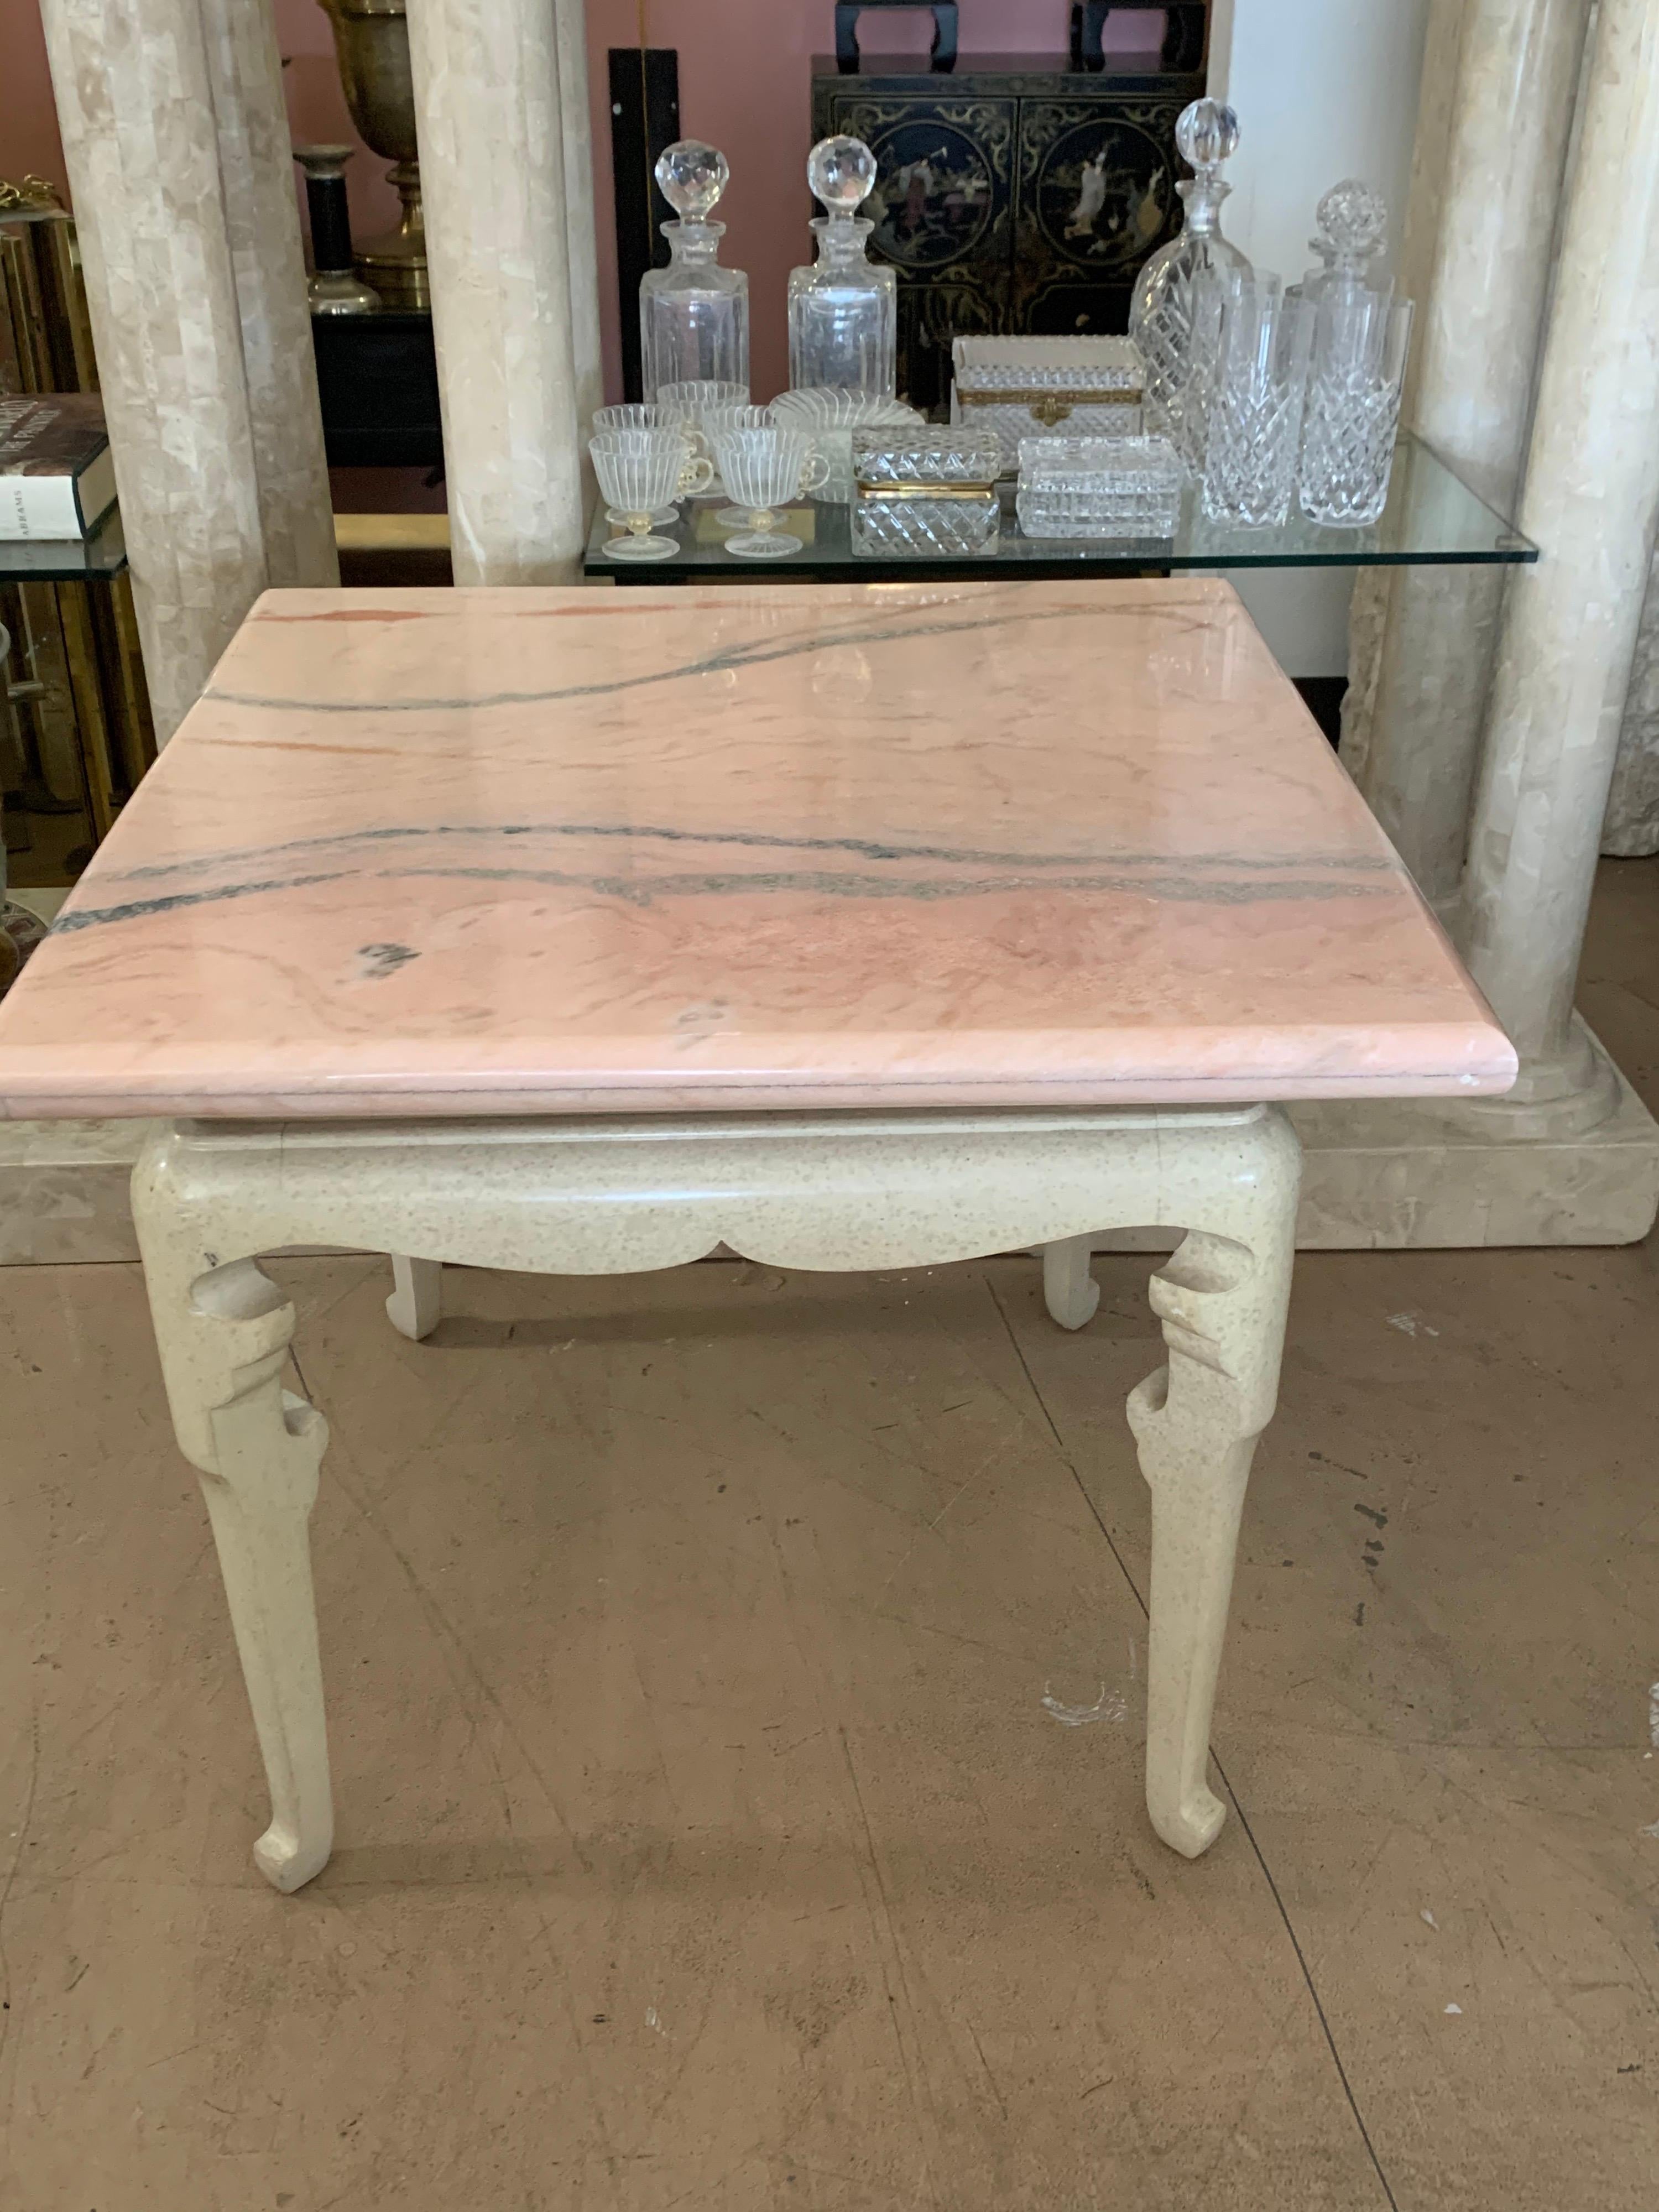 Cette pièce provient du salon de la maison d'une fashionista à Palm Springs en Californie. La table a été fabriquée par Marge Carson avec un plateau en marbre rose veiné personnalisé. Les colorations sont vraiment magnifiques. Base bicolore beige